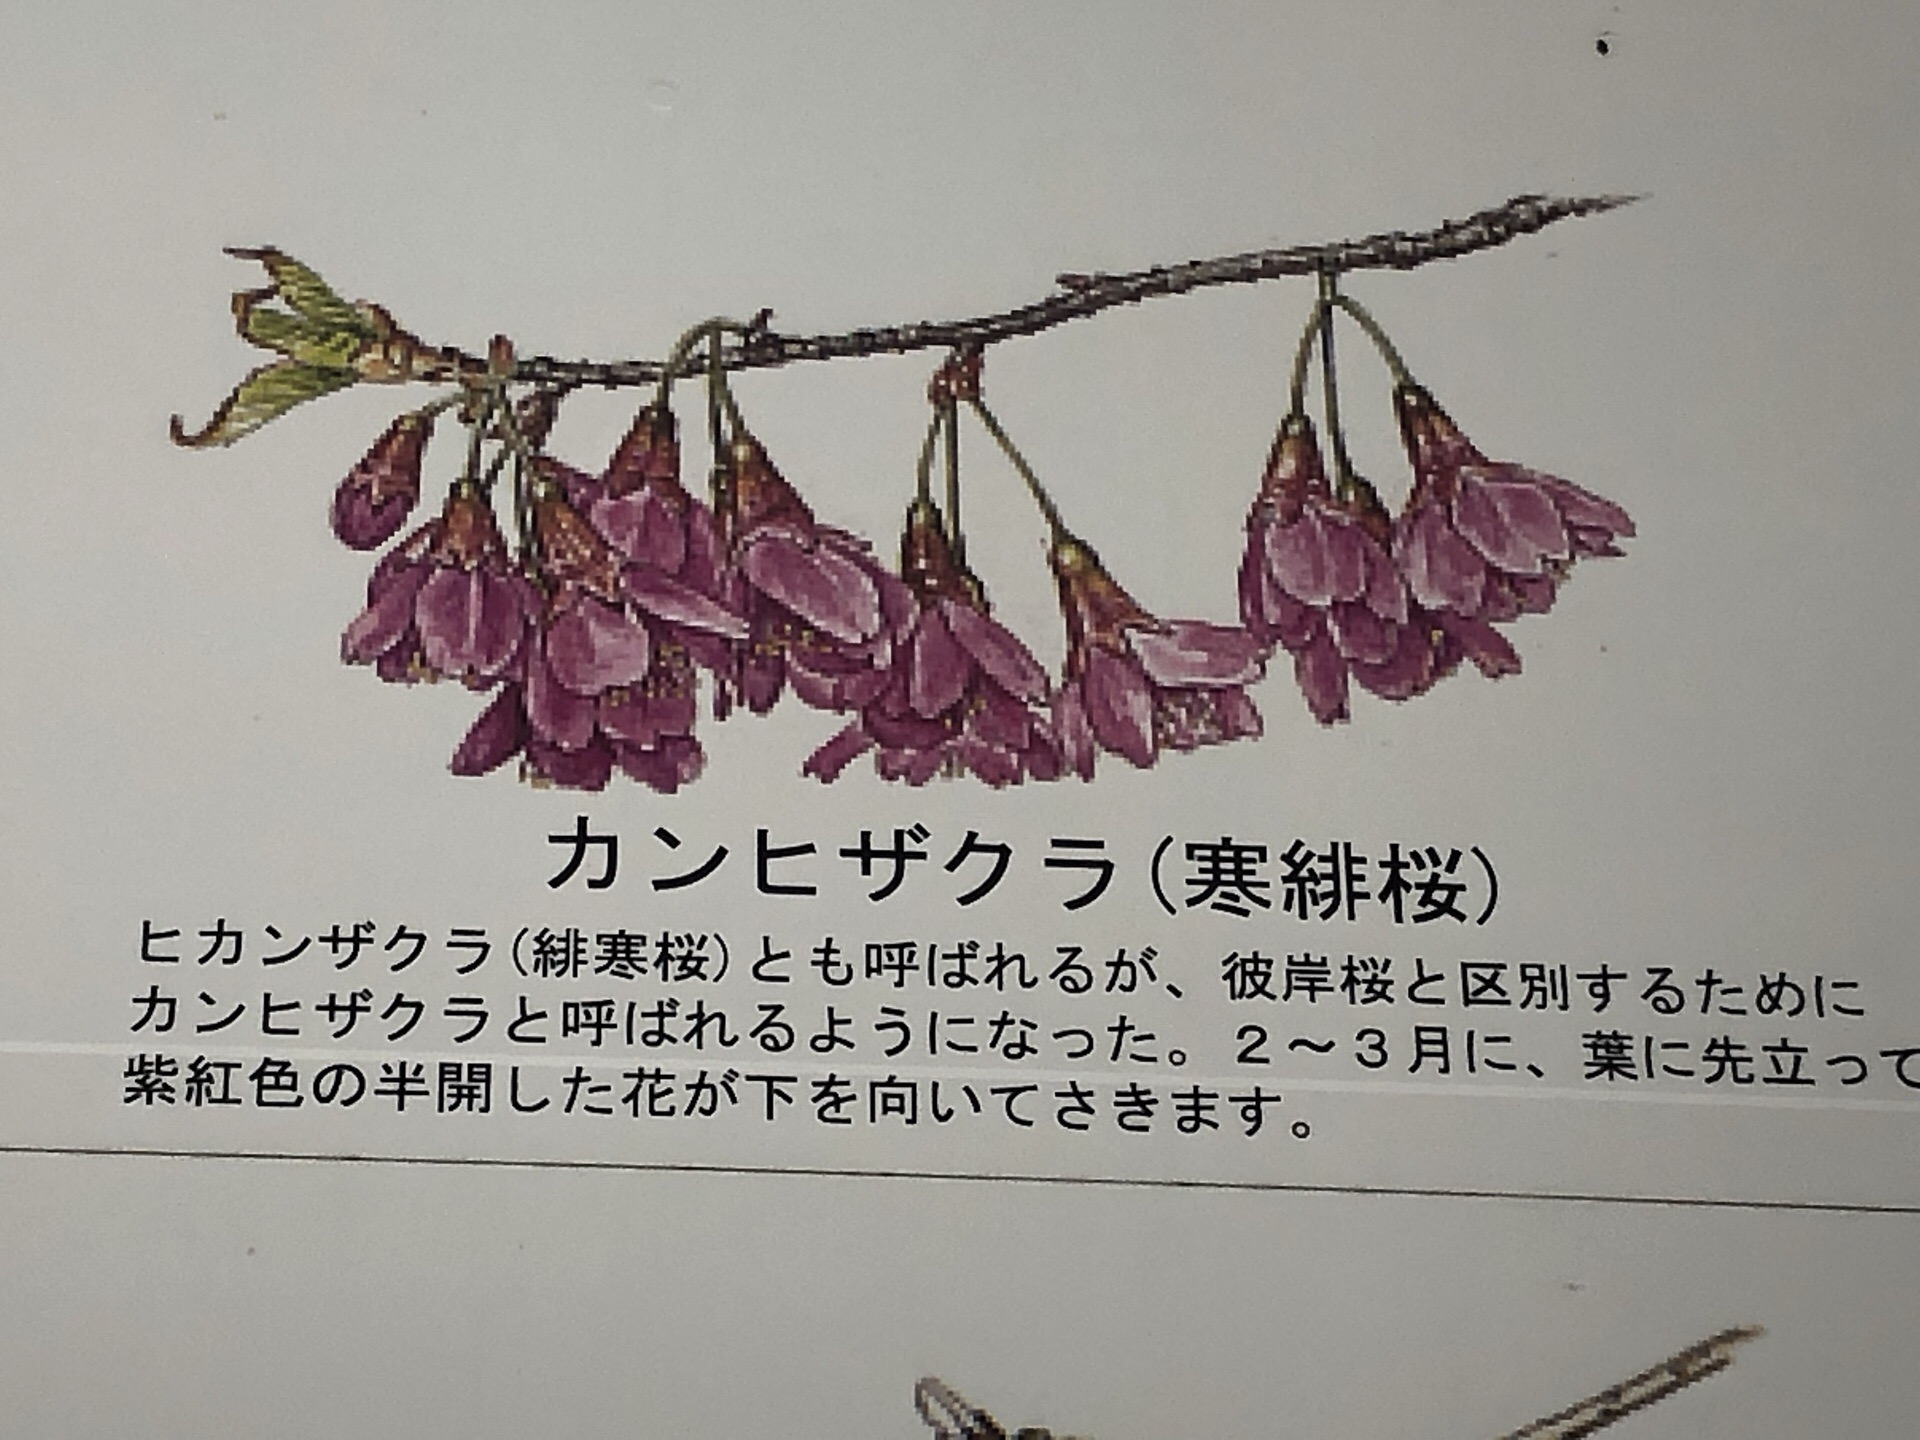 寒緋桜2月报春 日本樱花种类较多，但属于耐不住寂寞的早樱的主要有洁白无瑕的“神崎大島”桜，以及赤血欲